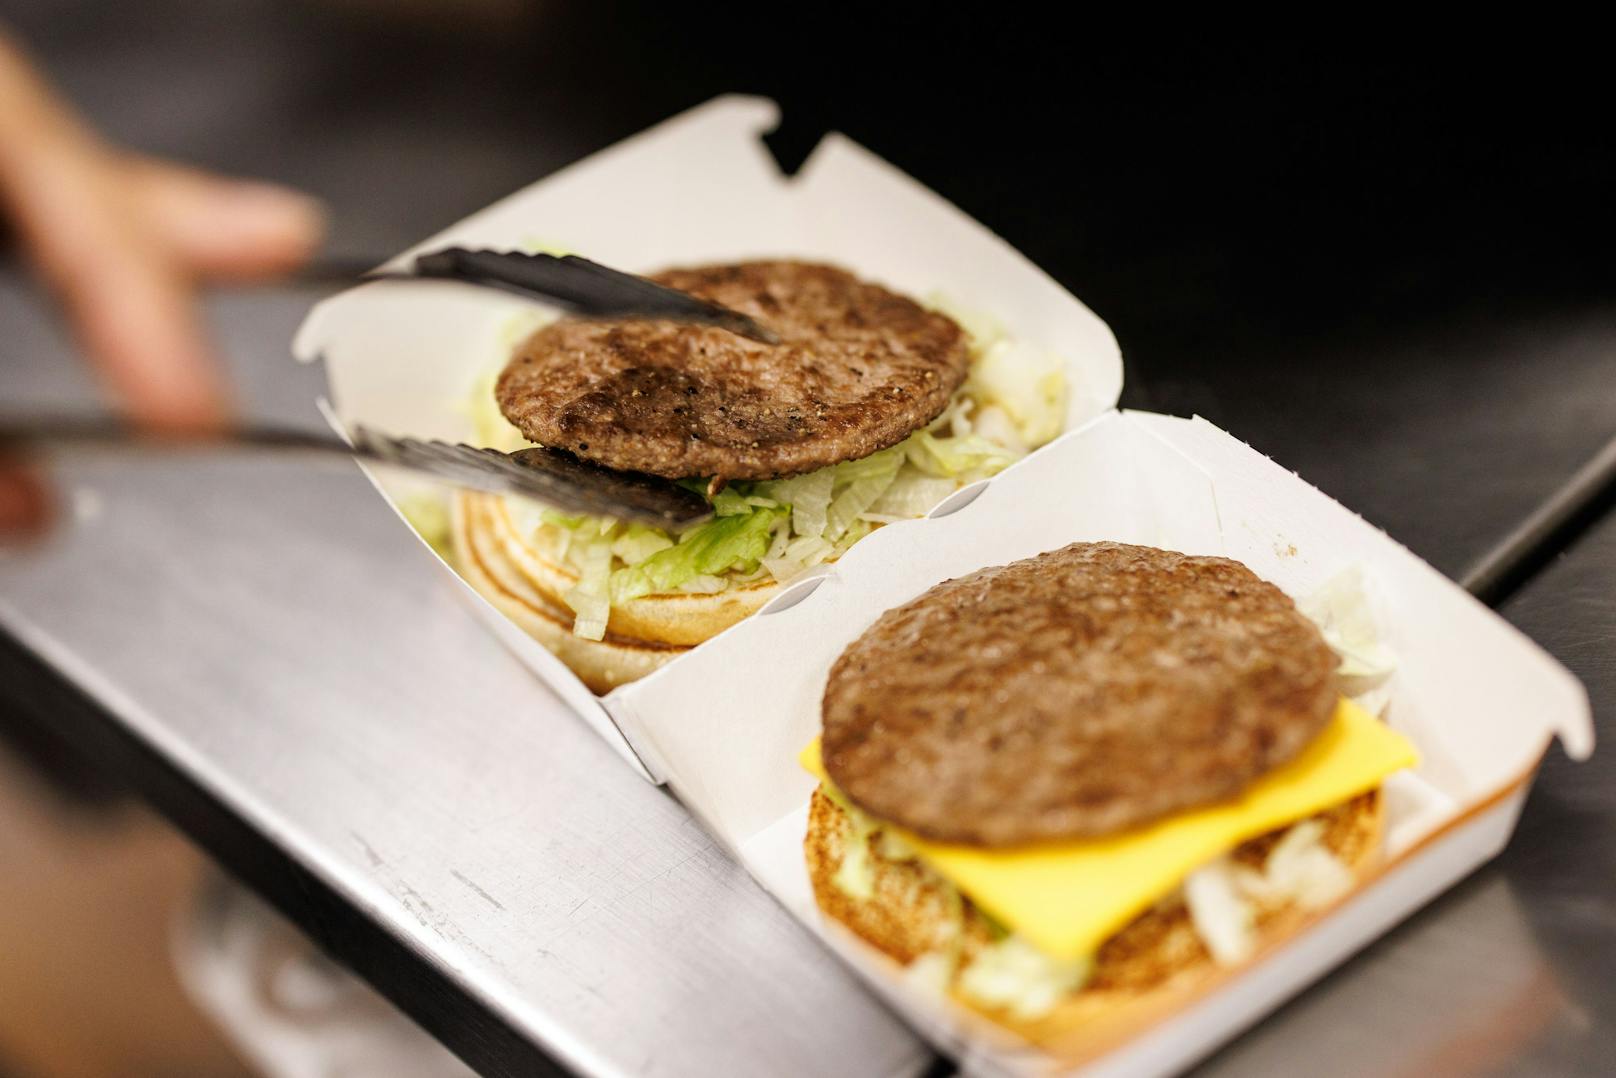 Bei McDonald's werden nach eigenen Angaben alle Burger nur noch frisch auf Bestellung zubereitet. (Symbolbild)